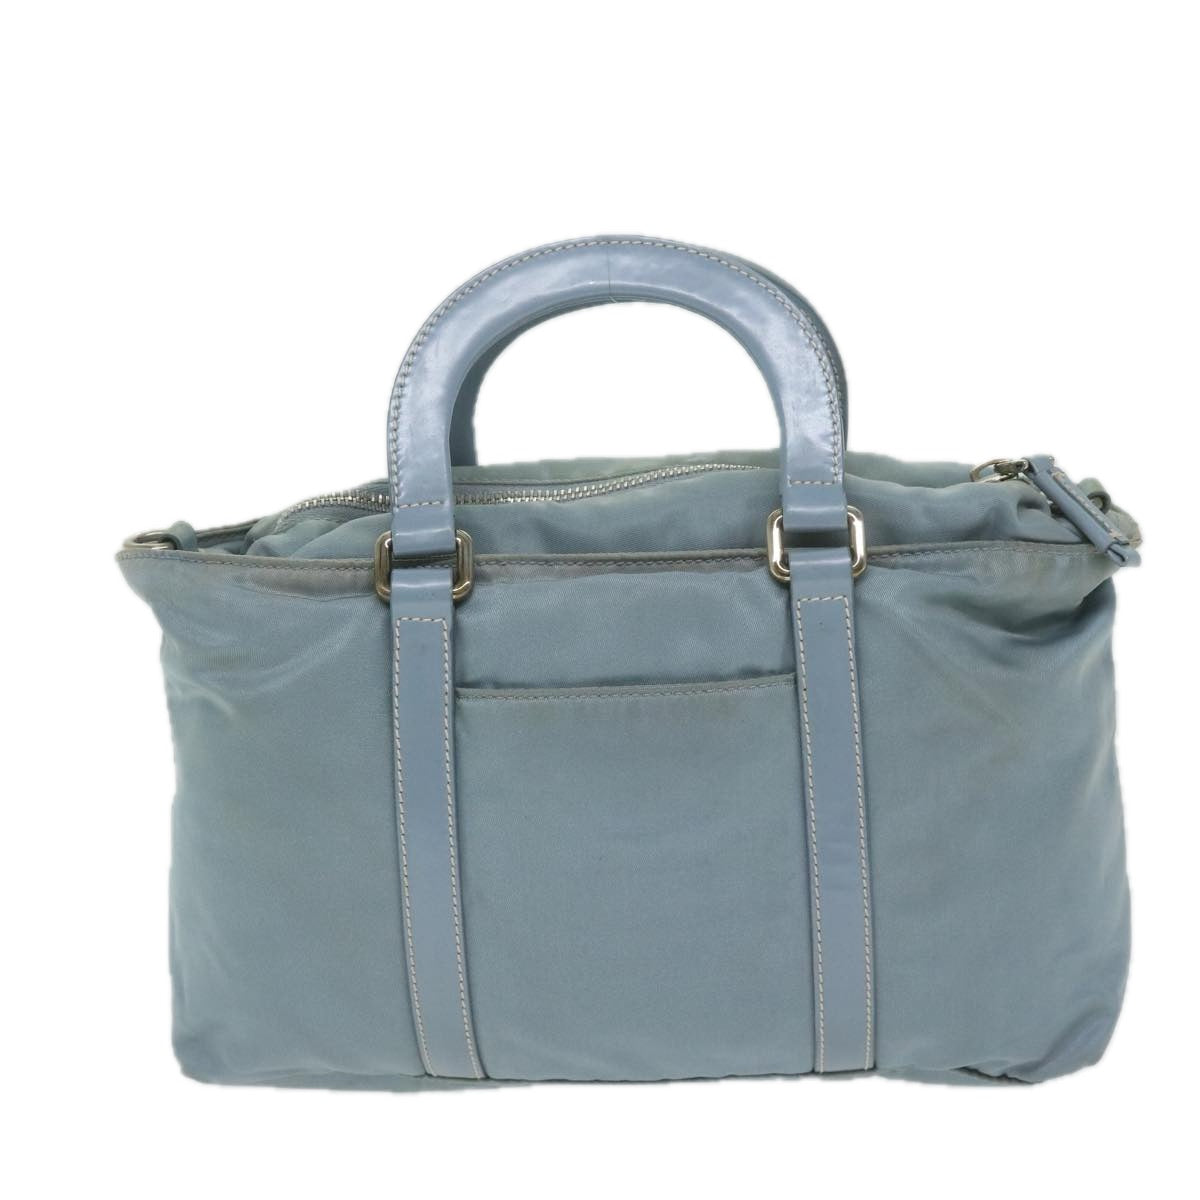 PRADA Hand Bag Nylon 2way Light Blue Auth 63525 - 0